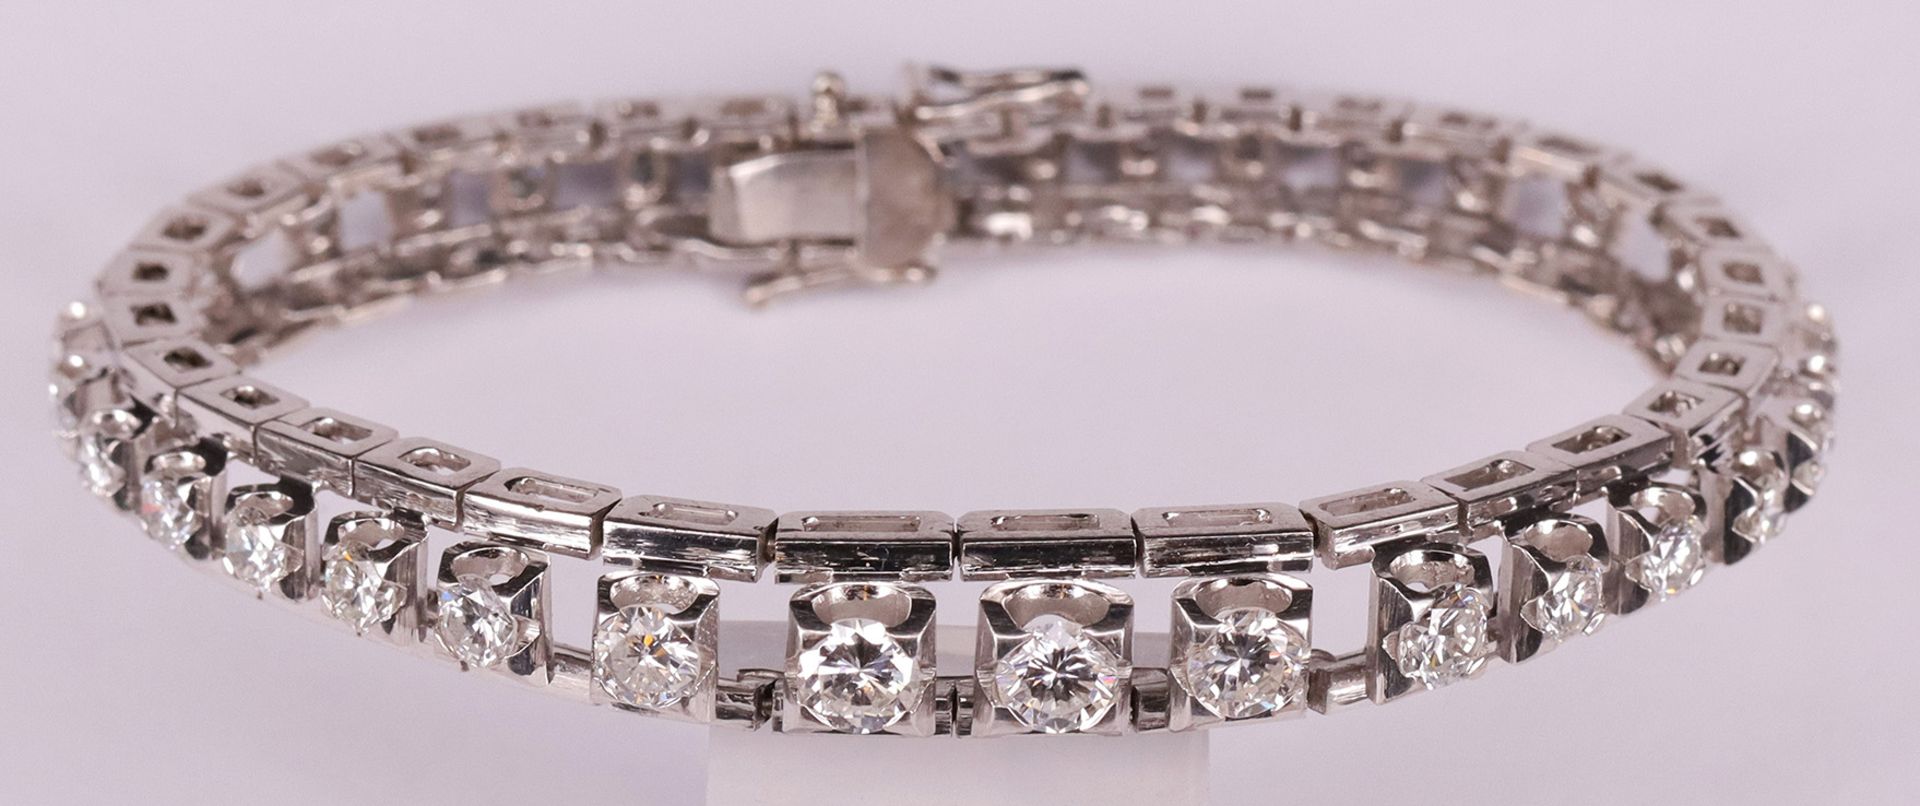 Armband mit Diamanten, 585er WG, mit 34 Brillanten, ca. 6 ct, davon die größten mit je 5 mm D.